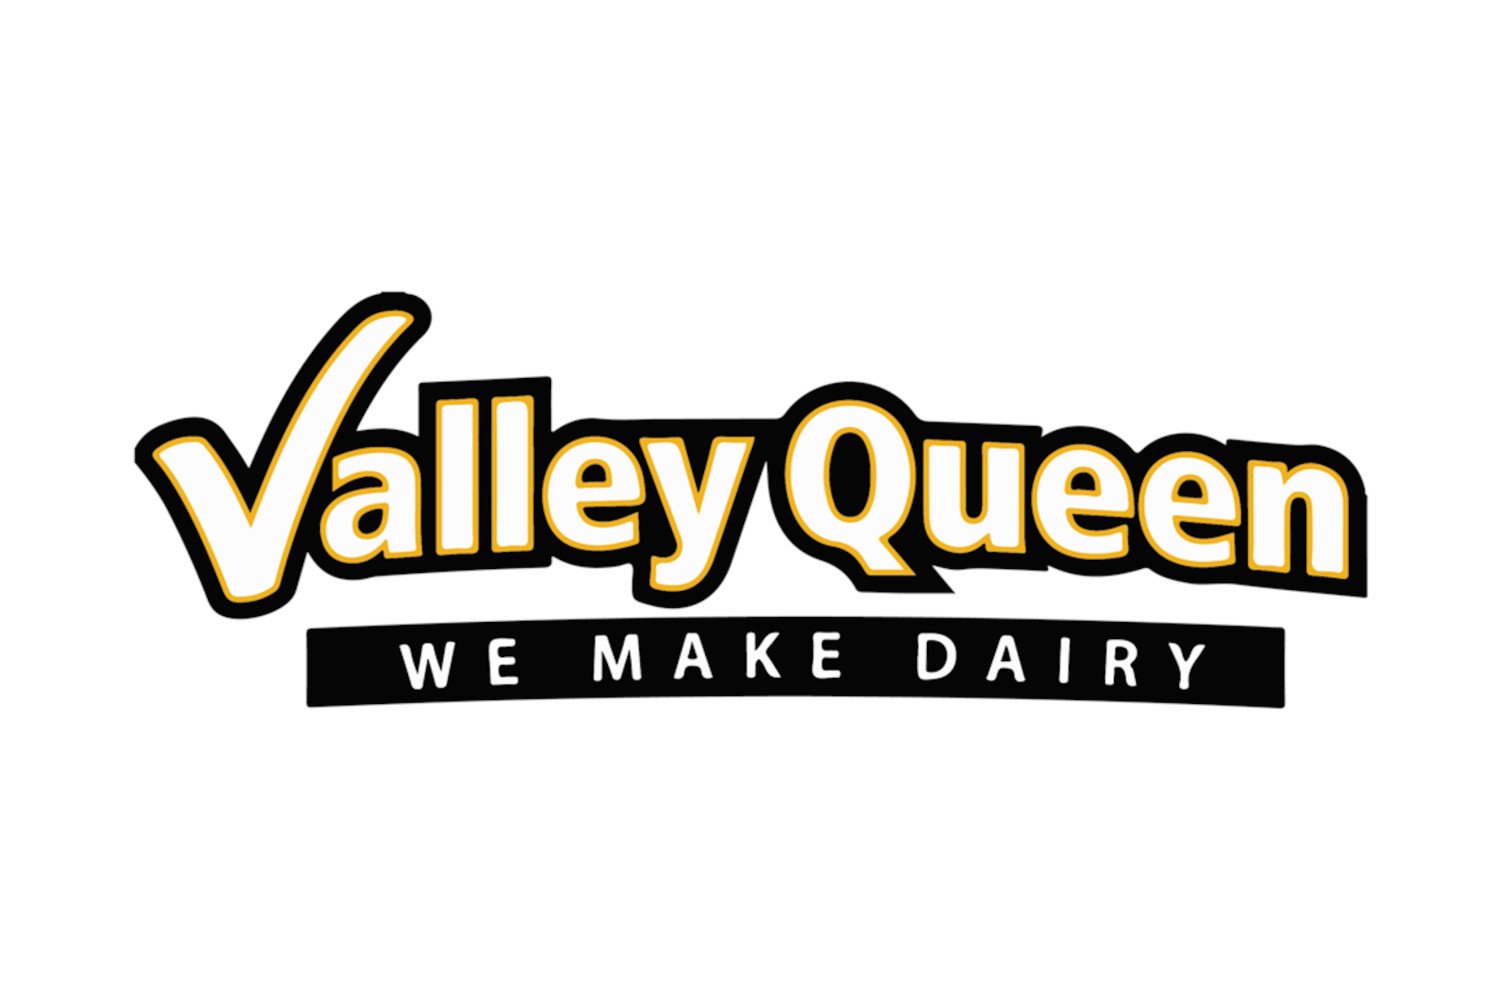 Valley Queen logo